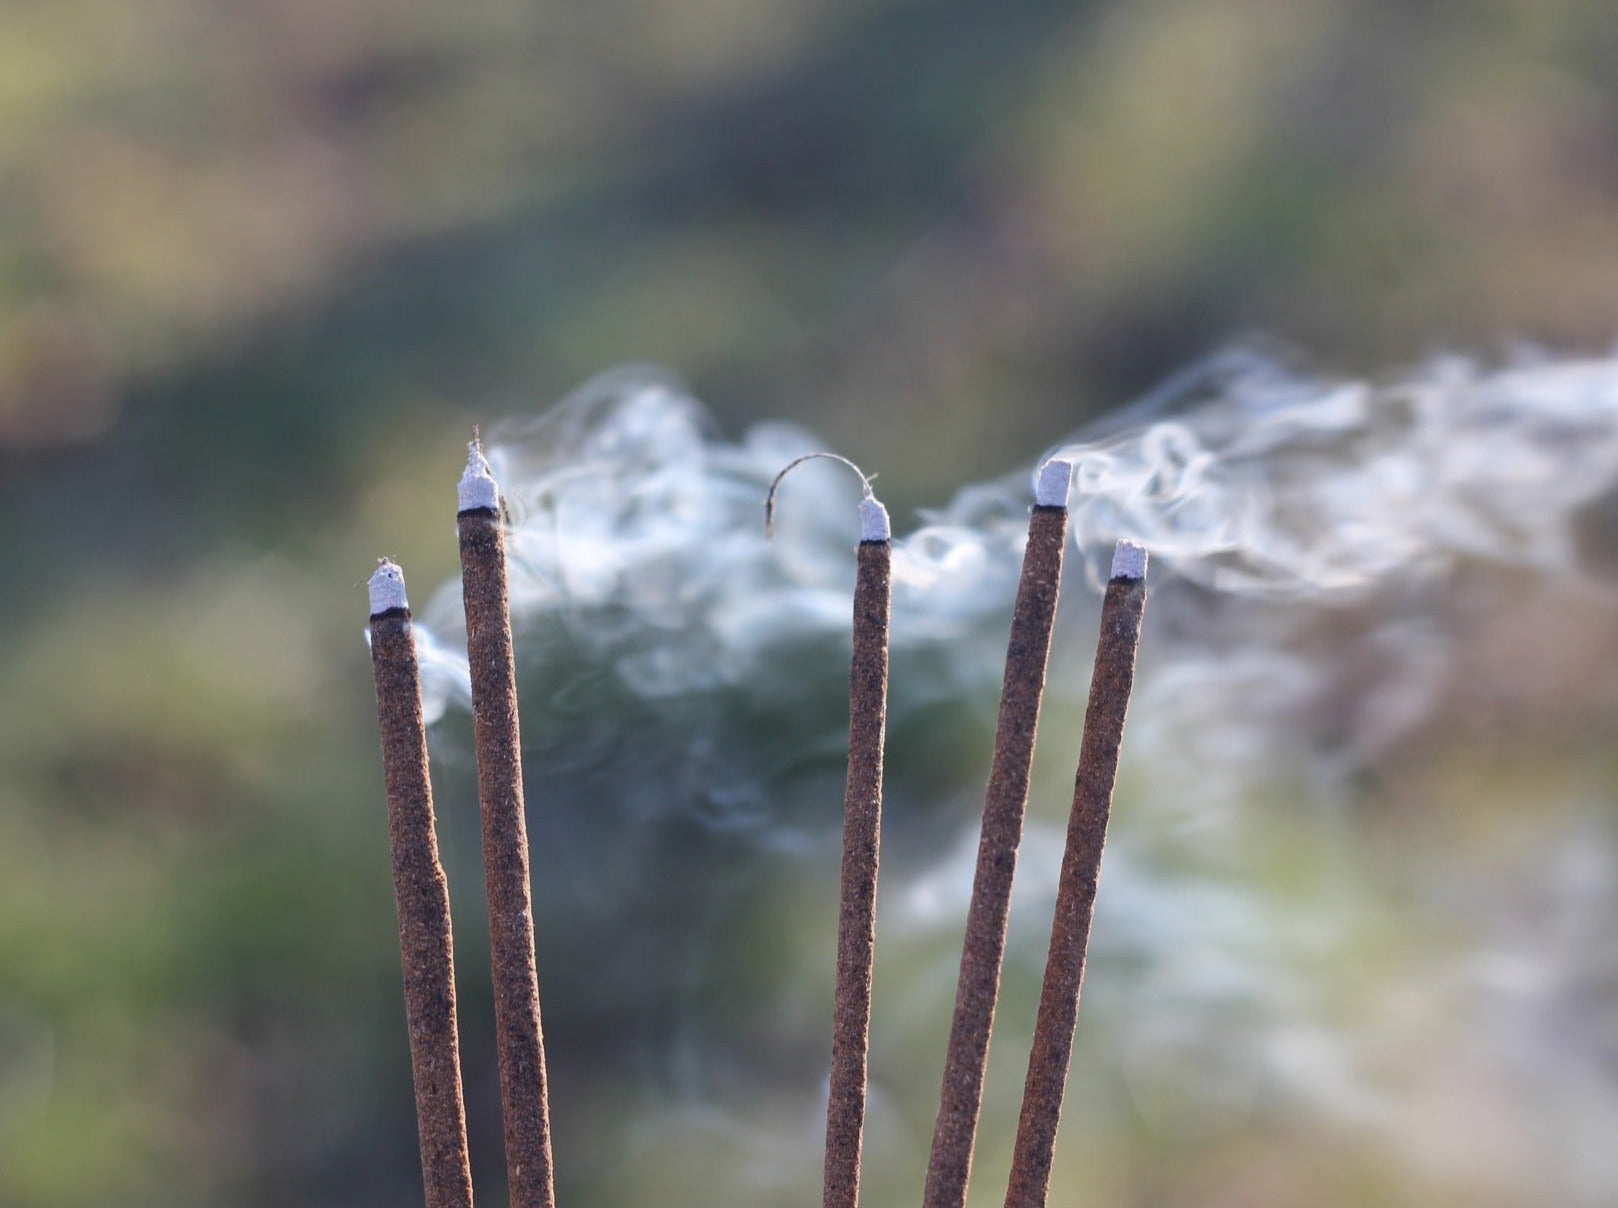 Tibetan herbal incense sticks burning with smoke.